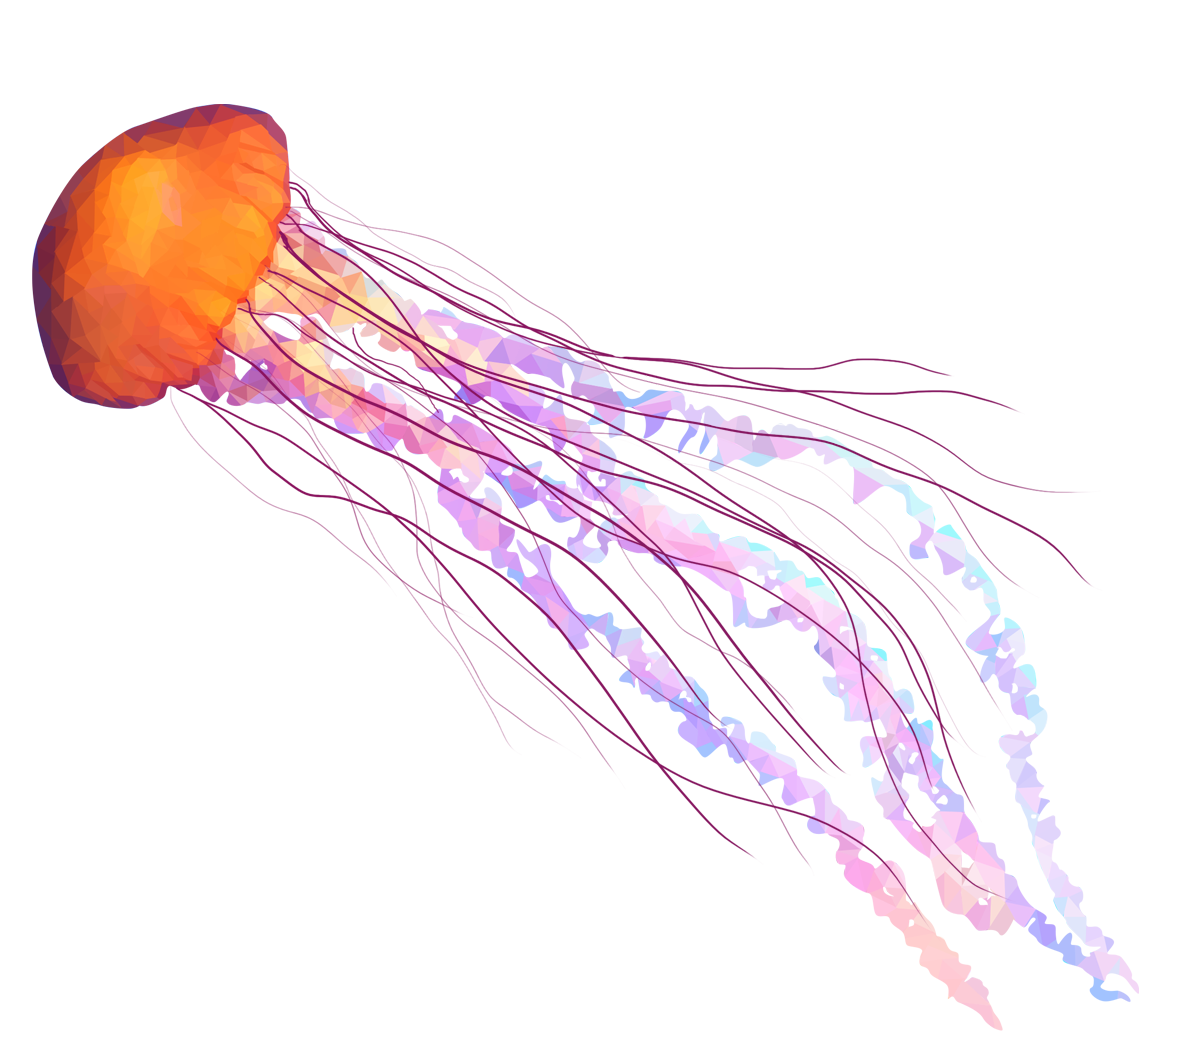 Jellyfish thing